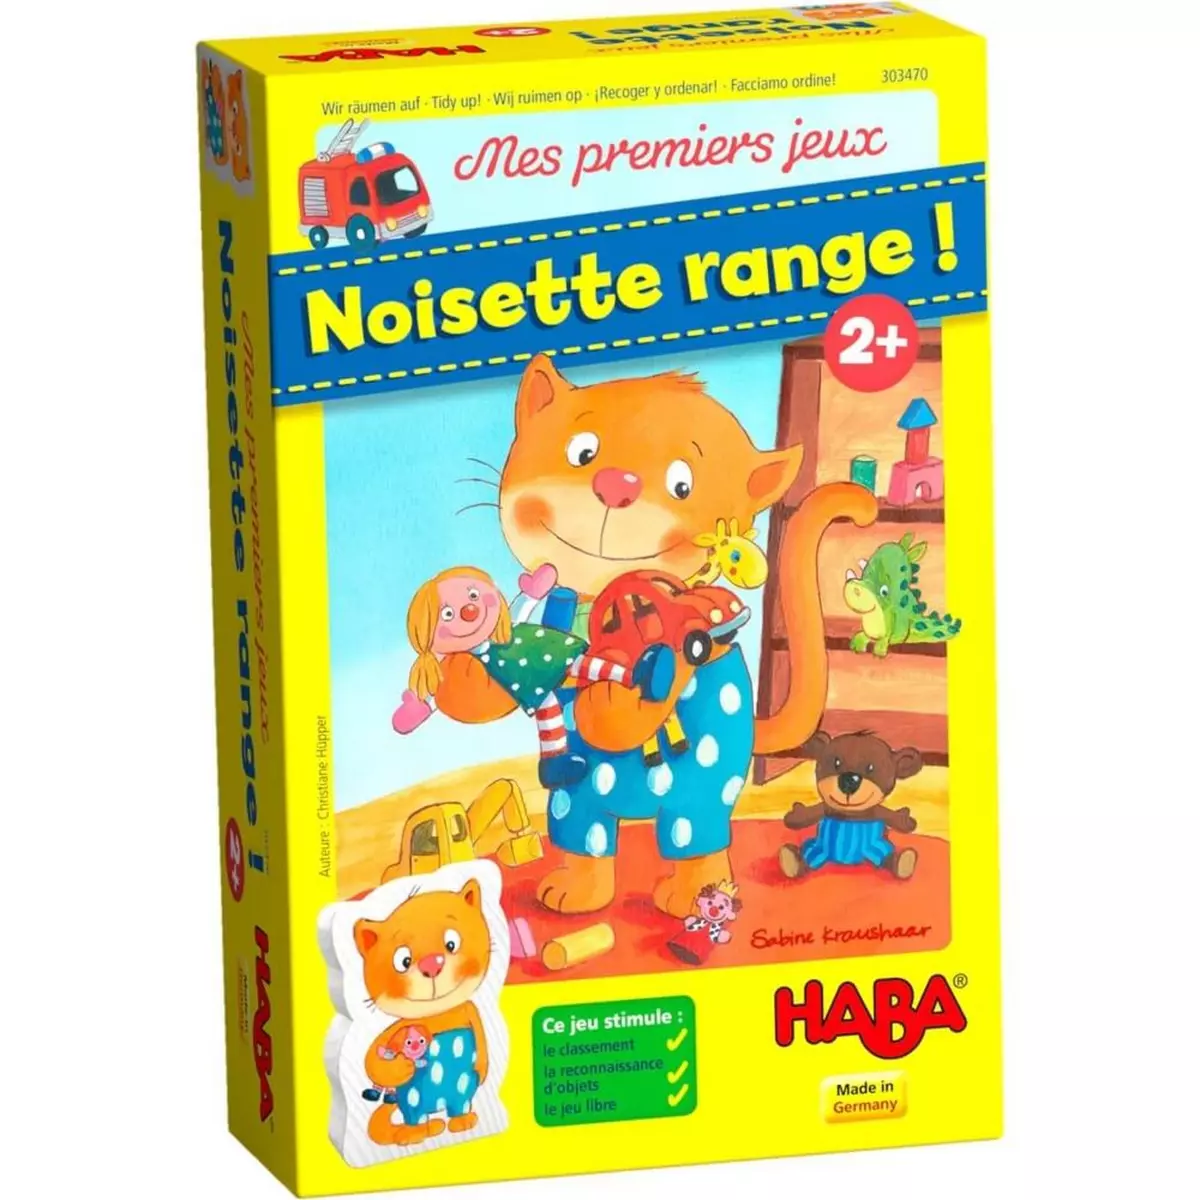 Haba Noisette range